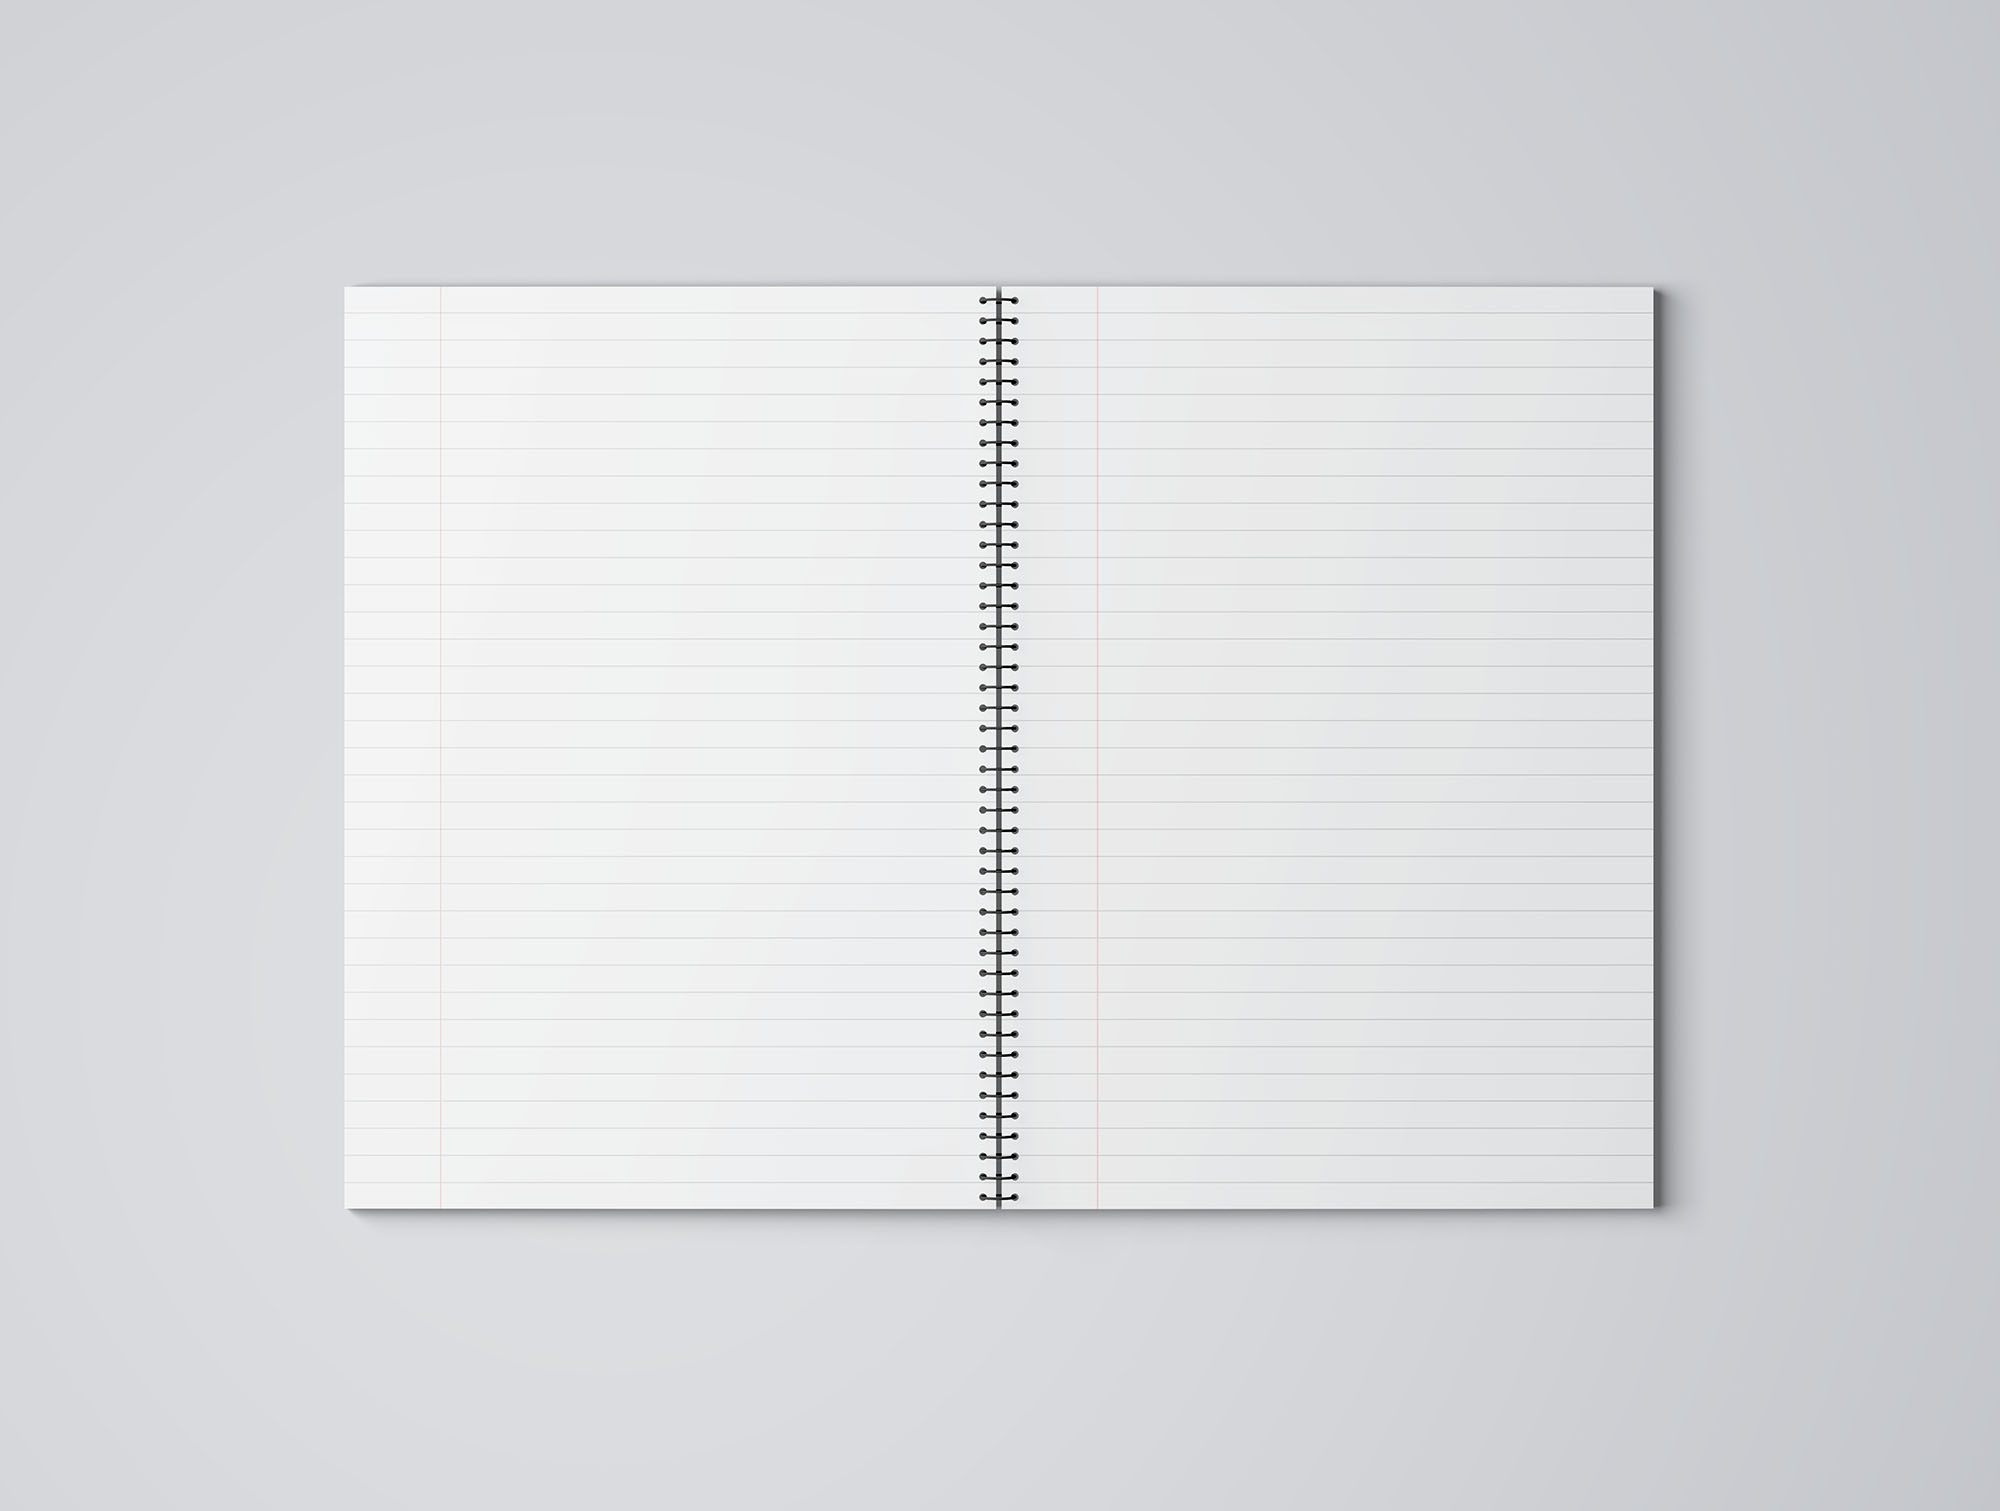 精致的A4笔记本样机 Exquisite A4 Notebook Prototype插图2